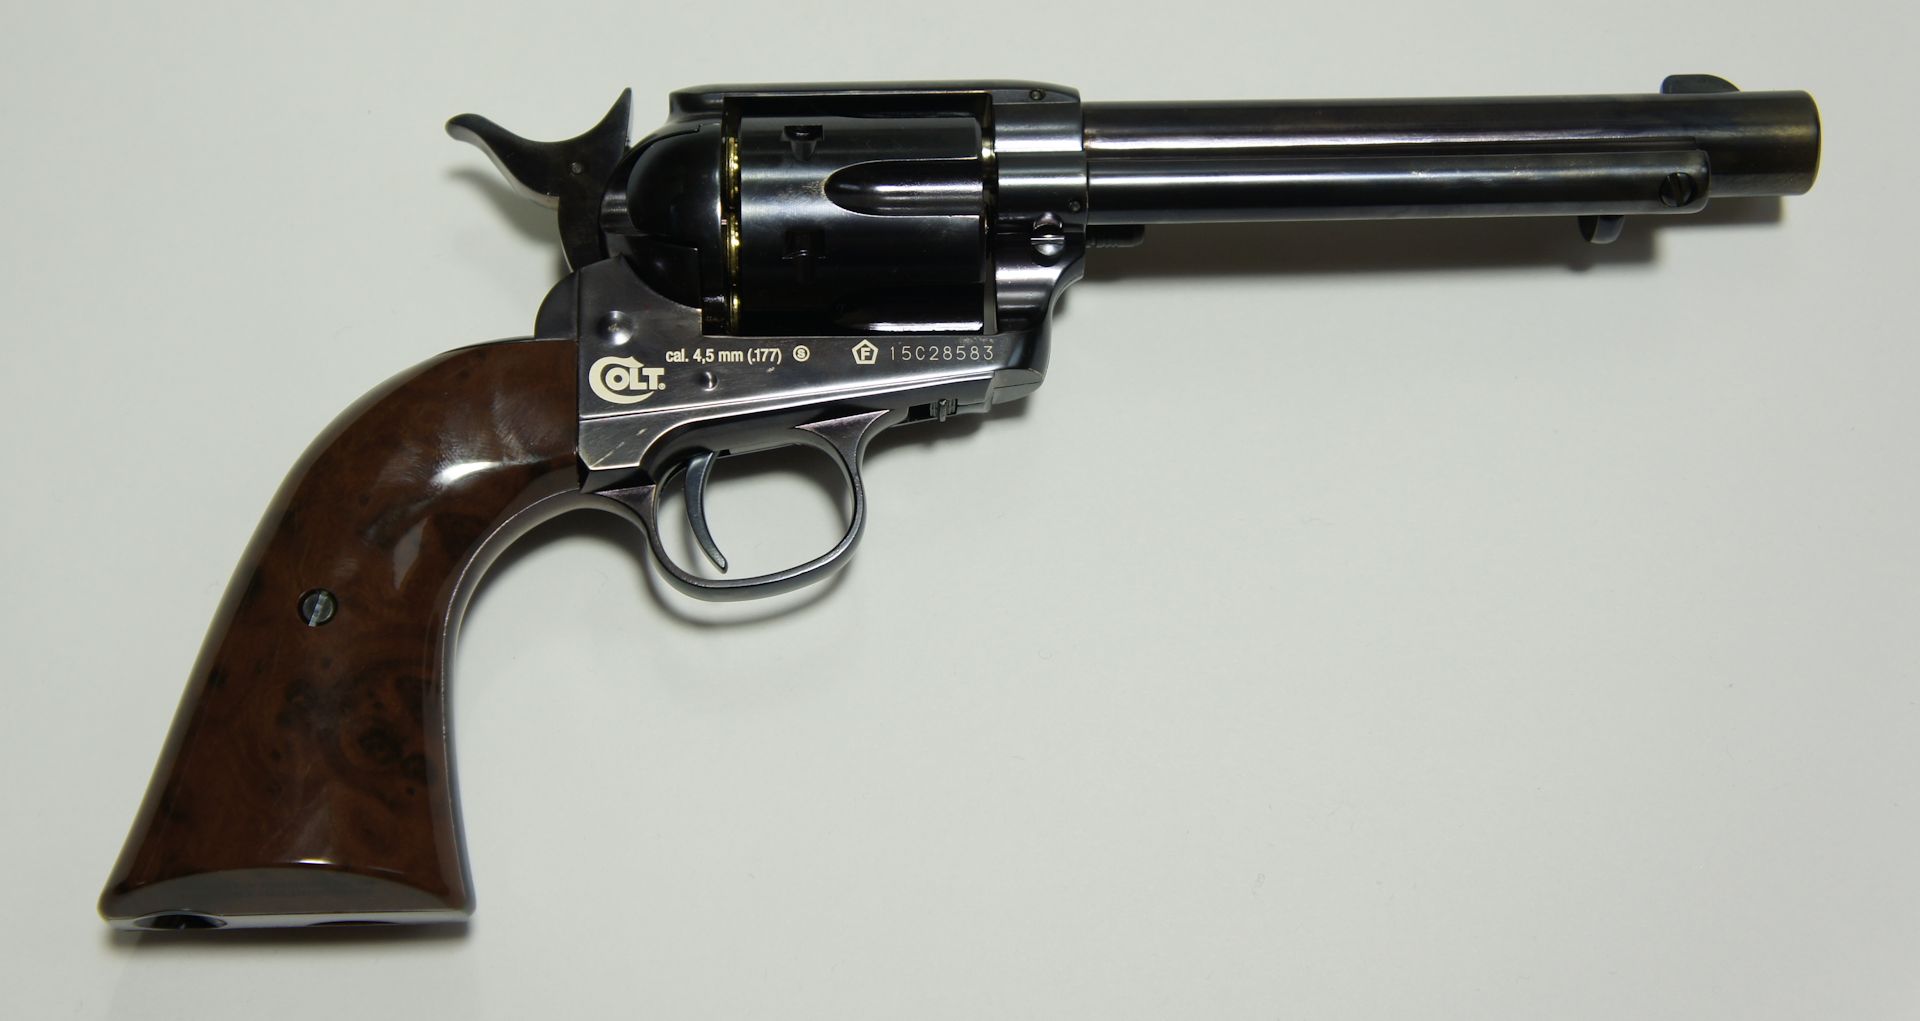 Achtung! Der Revolver hat eine Sicherung. Die Waffe wird in gesichertem Zustand geliefert und so lässt sich der Hahn nicht spannen.